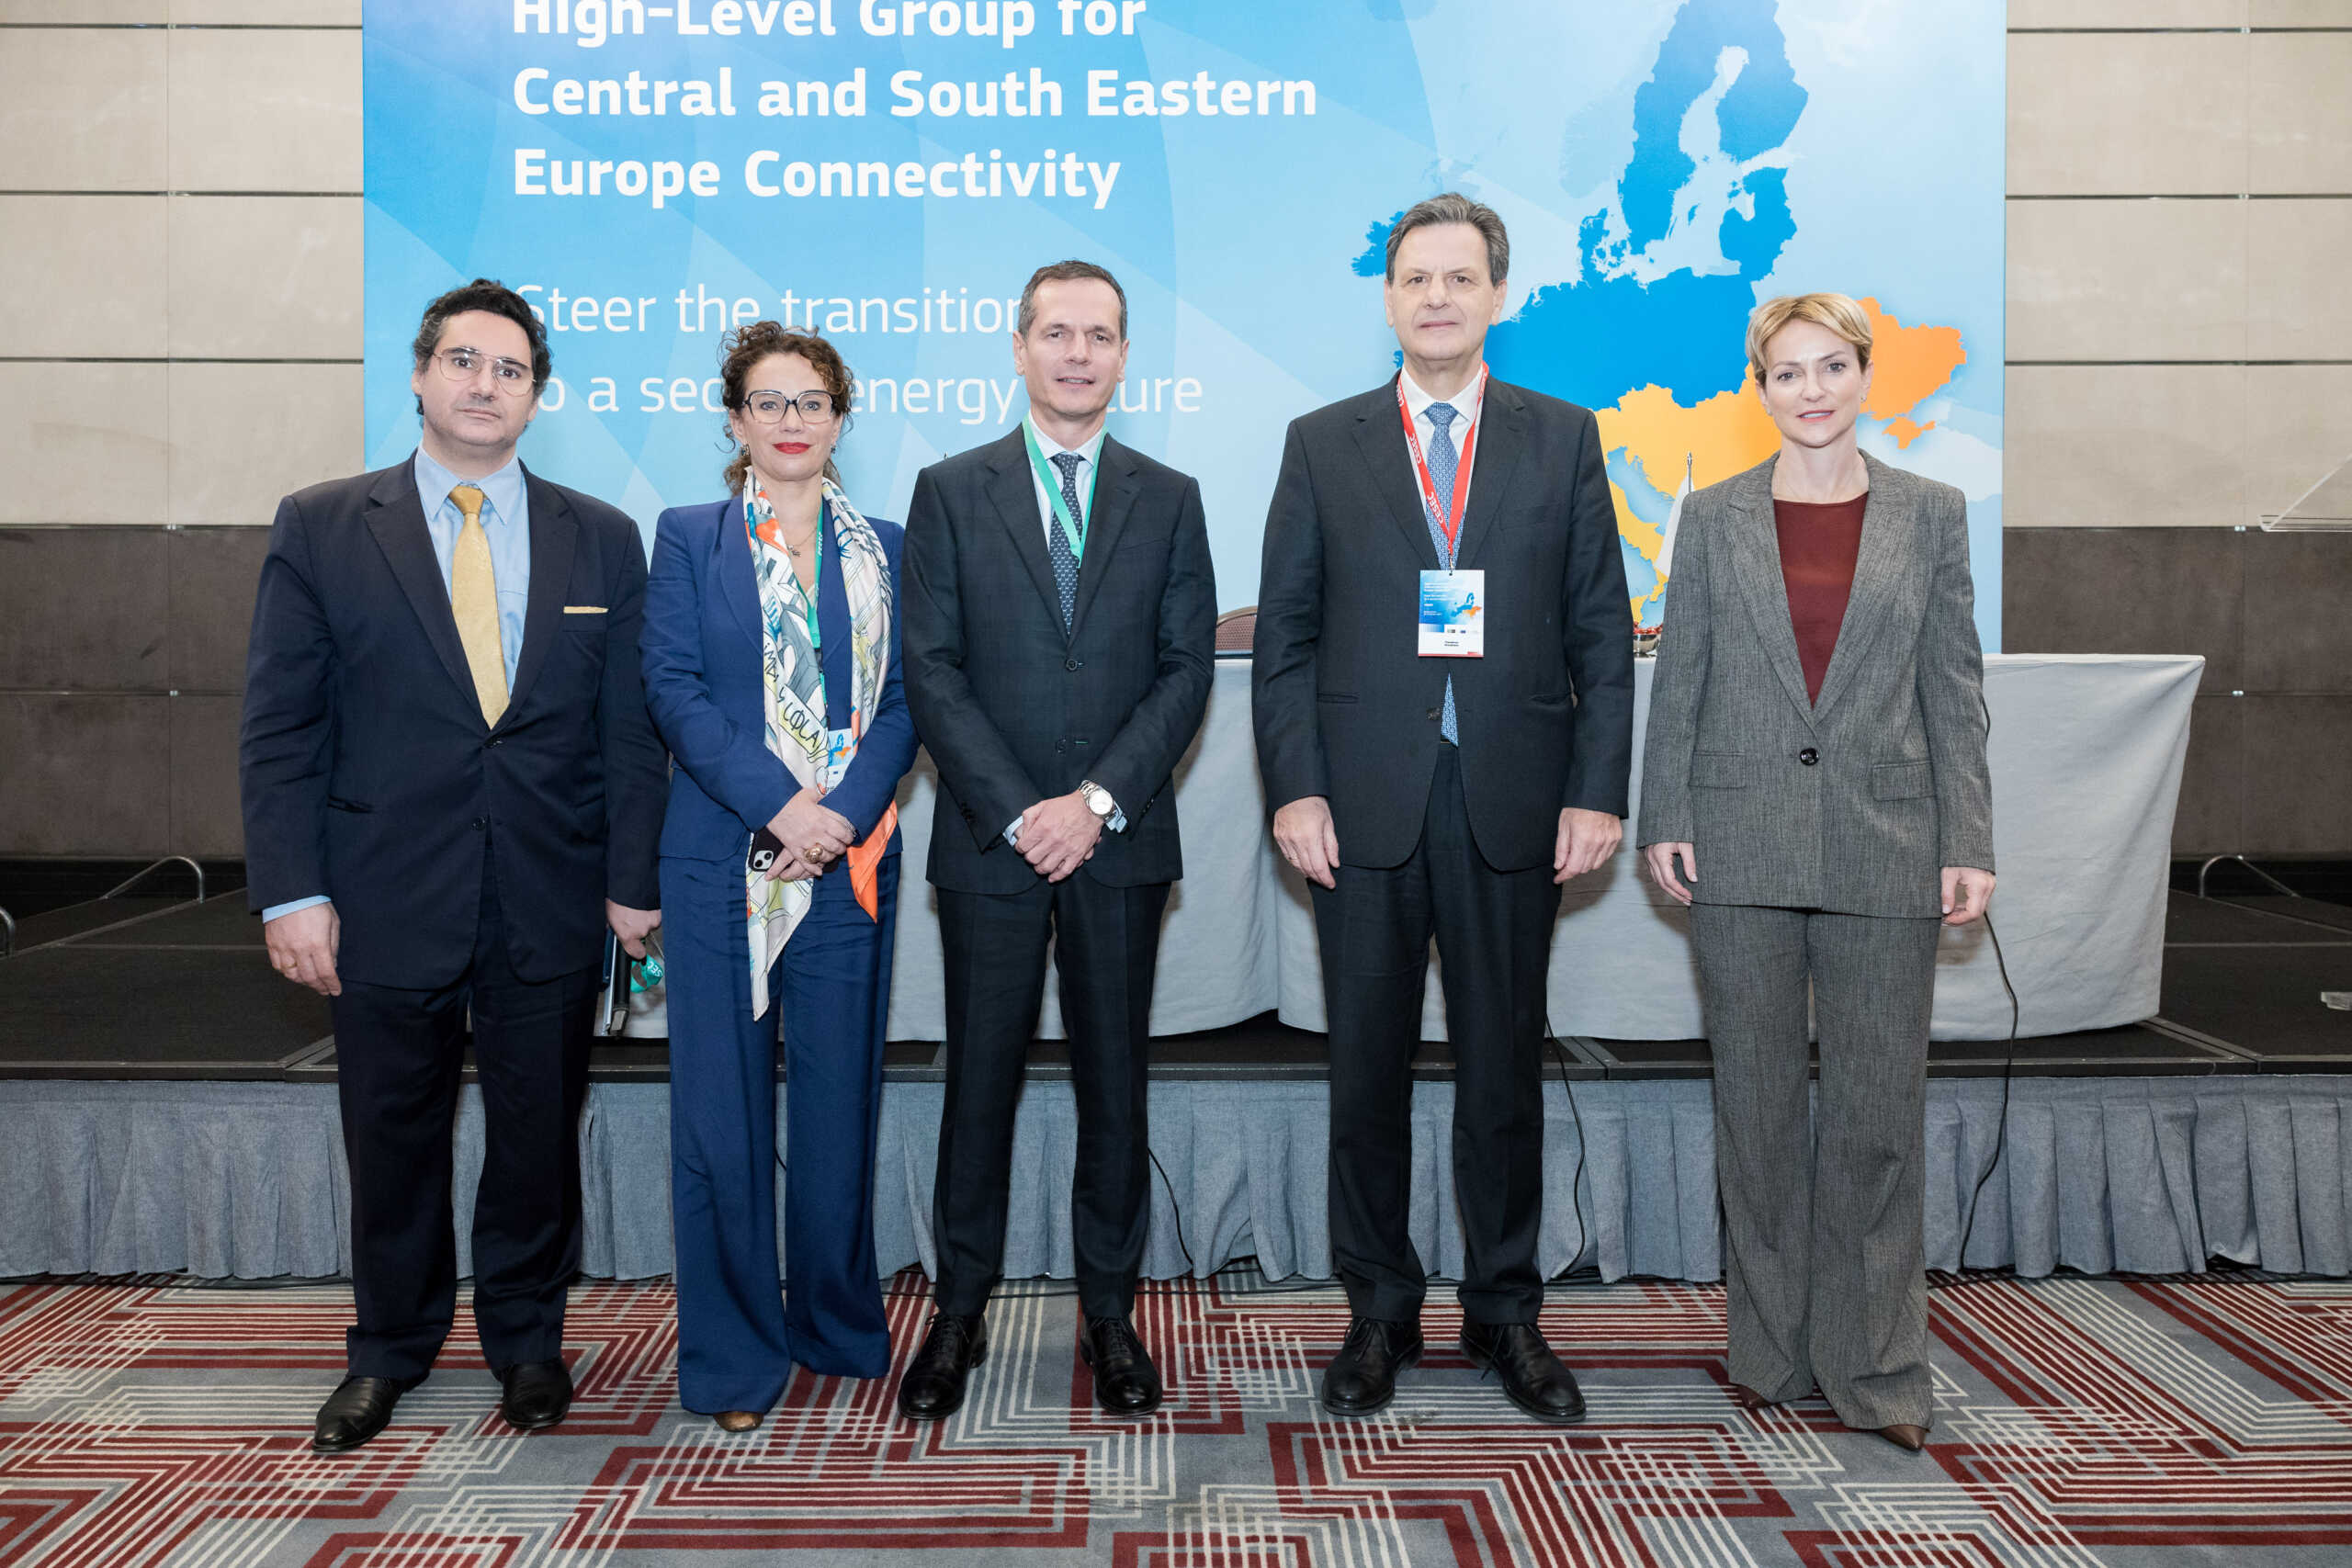 Μανουσάκης: Ο ΑΔΜΗΕ προωθεί την ενίσχυση του δικτύου ηλεκτρισμού στην κεντρική και νοτιοανατολική Ευρώπη